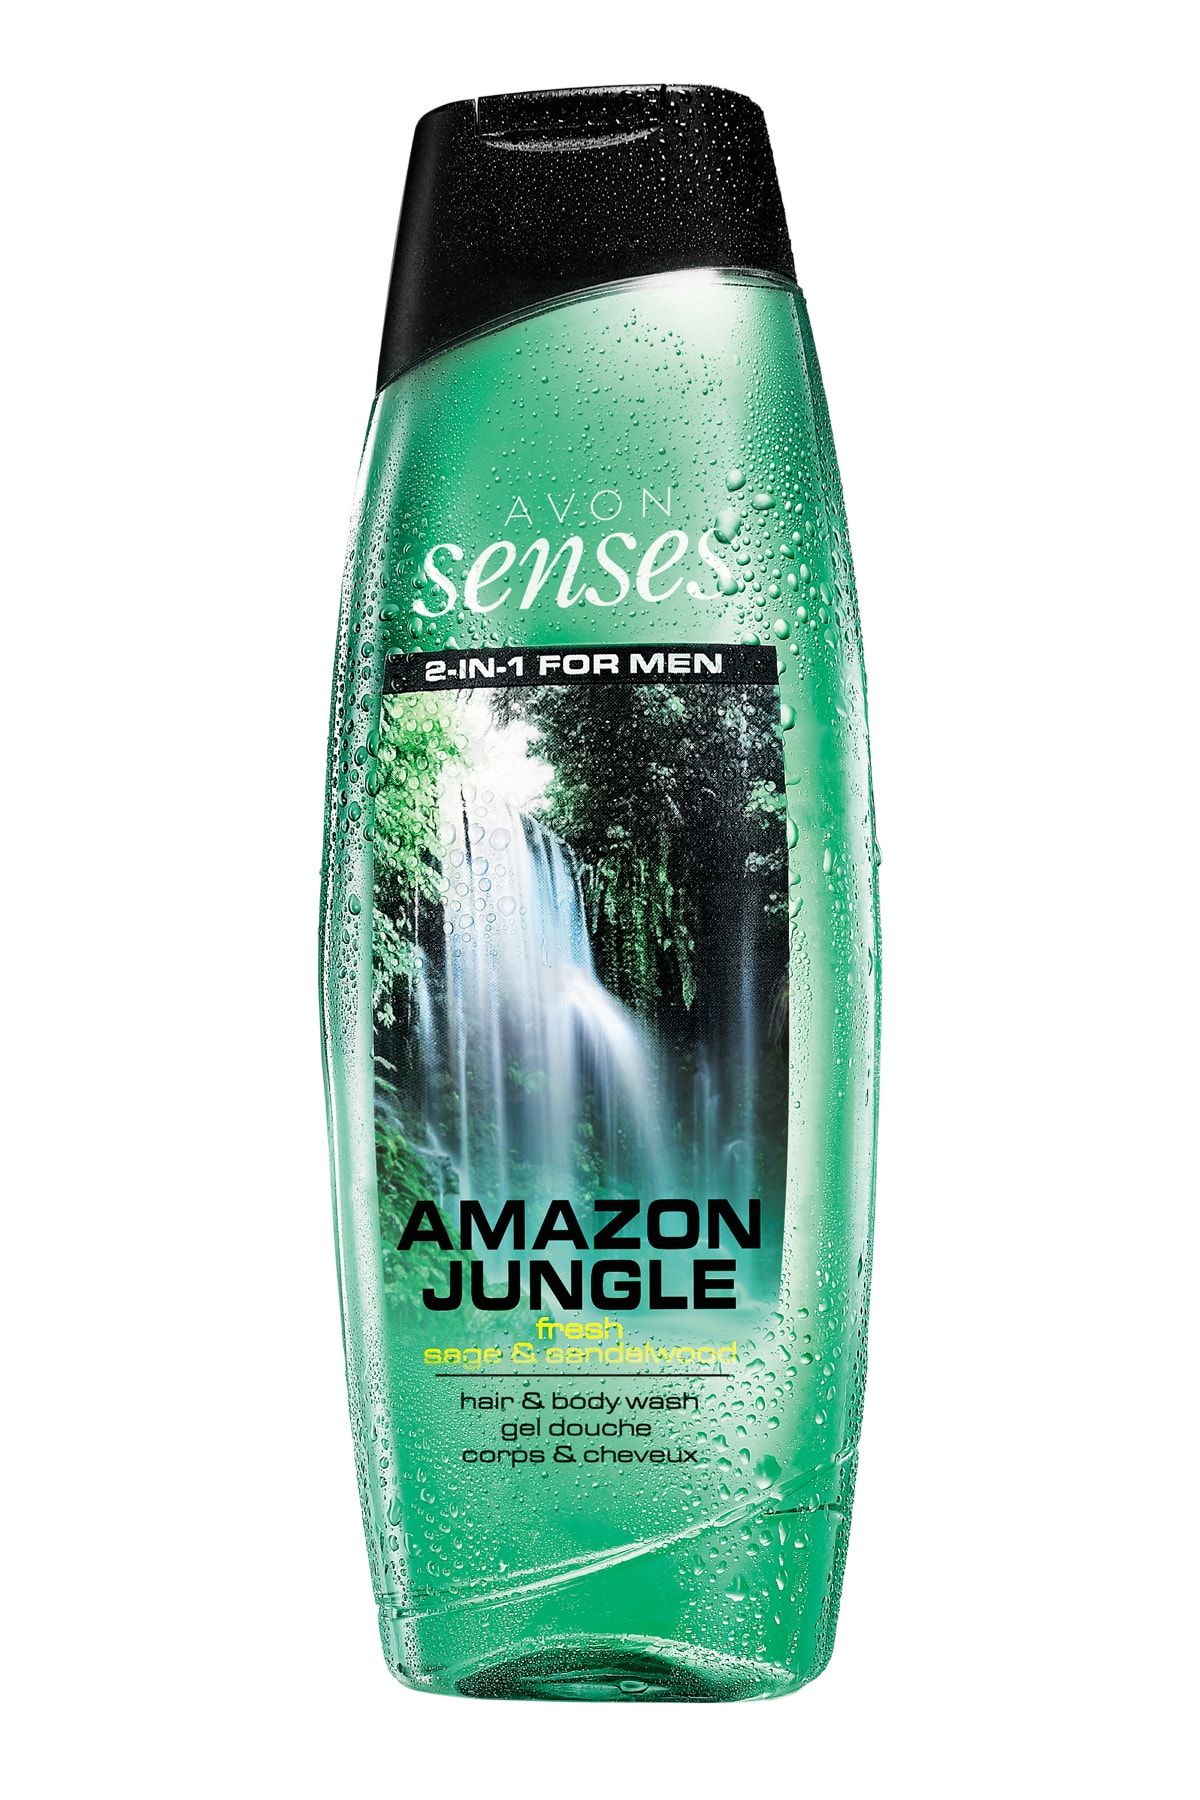 Avon Senses Erkekler İçin Amazon Jungle Saç ve Vücut Şampuanı - 500ml